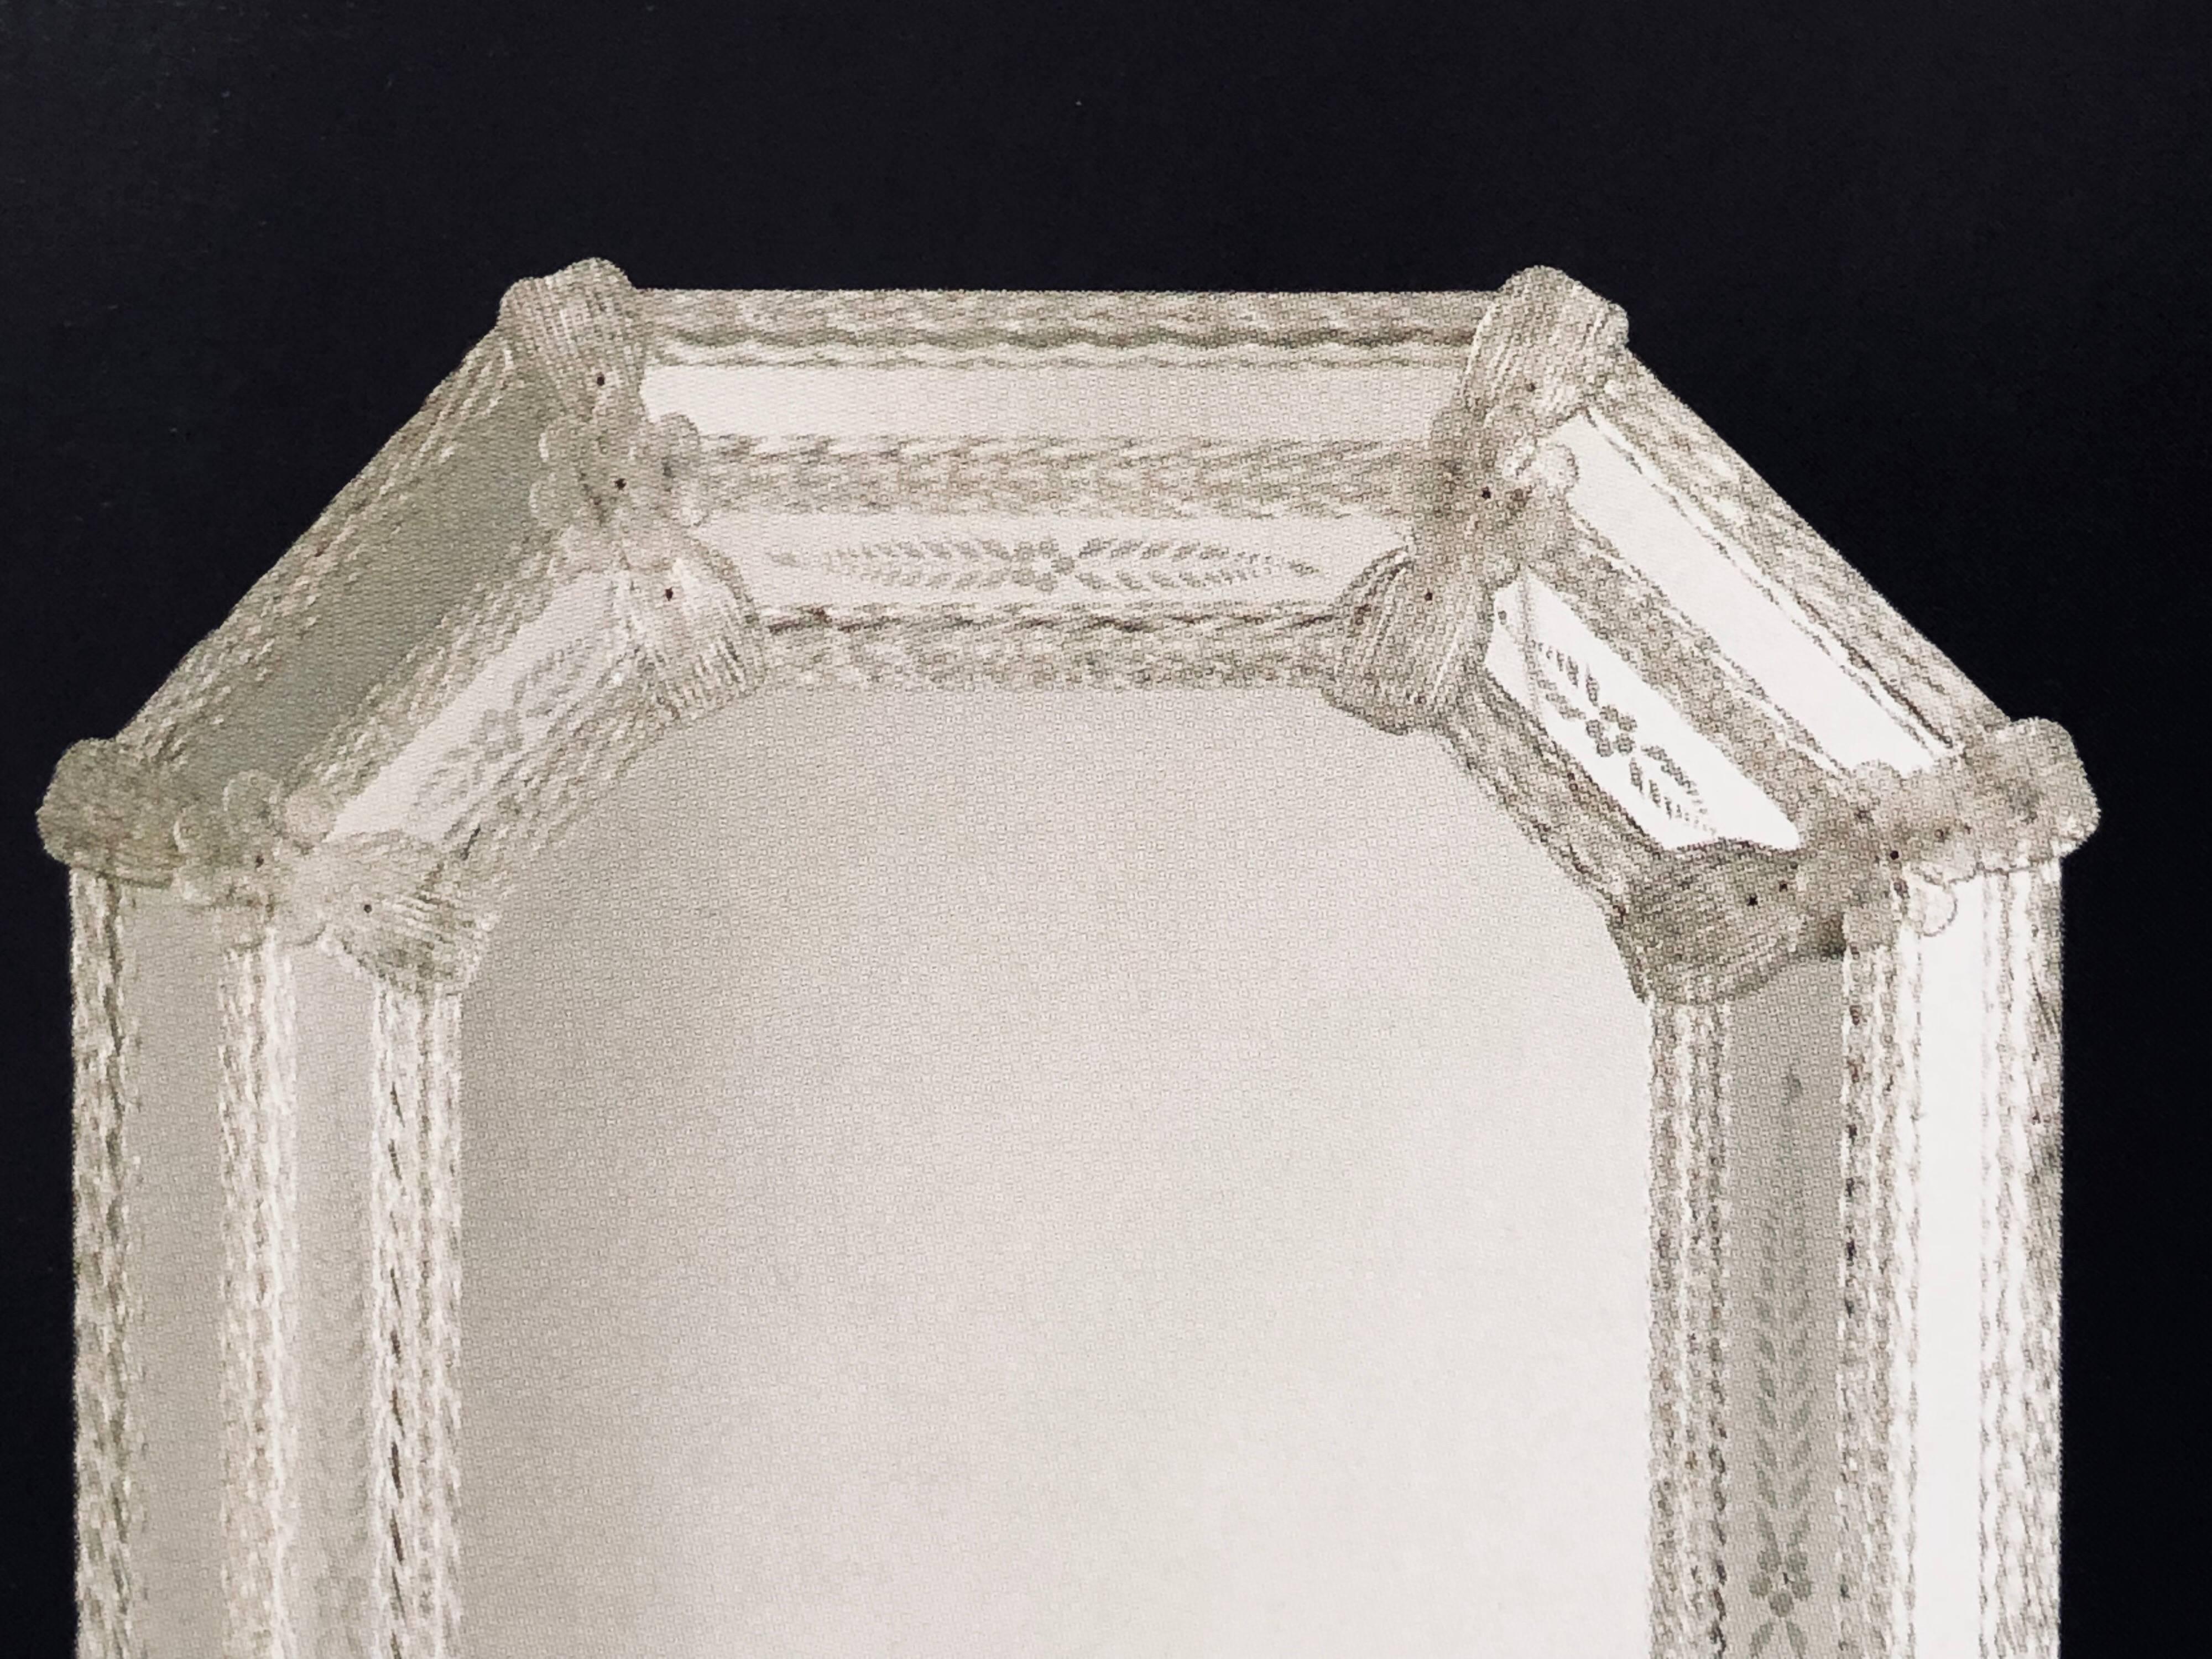 Zwei italienische achteckige Spiegel aus geätztem venezianischem / Murano-Glas im modernen neoklassischen Stil. Die Spiegel bestehen aus handgeätztem Glas und sind mit Bändern und Rosetten aus Klarglas verziert. Kundenspezifische Spiegel sind